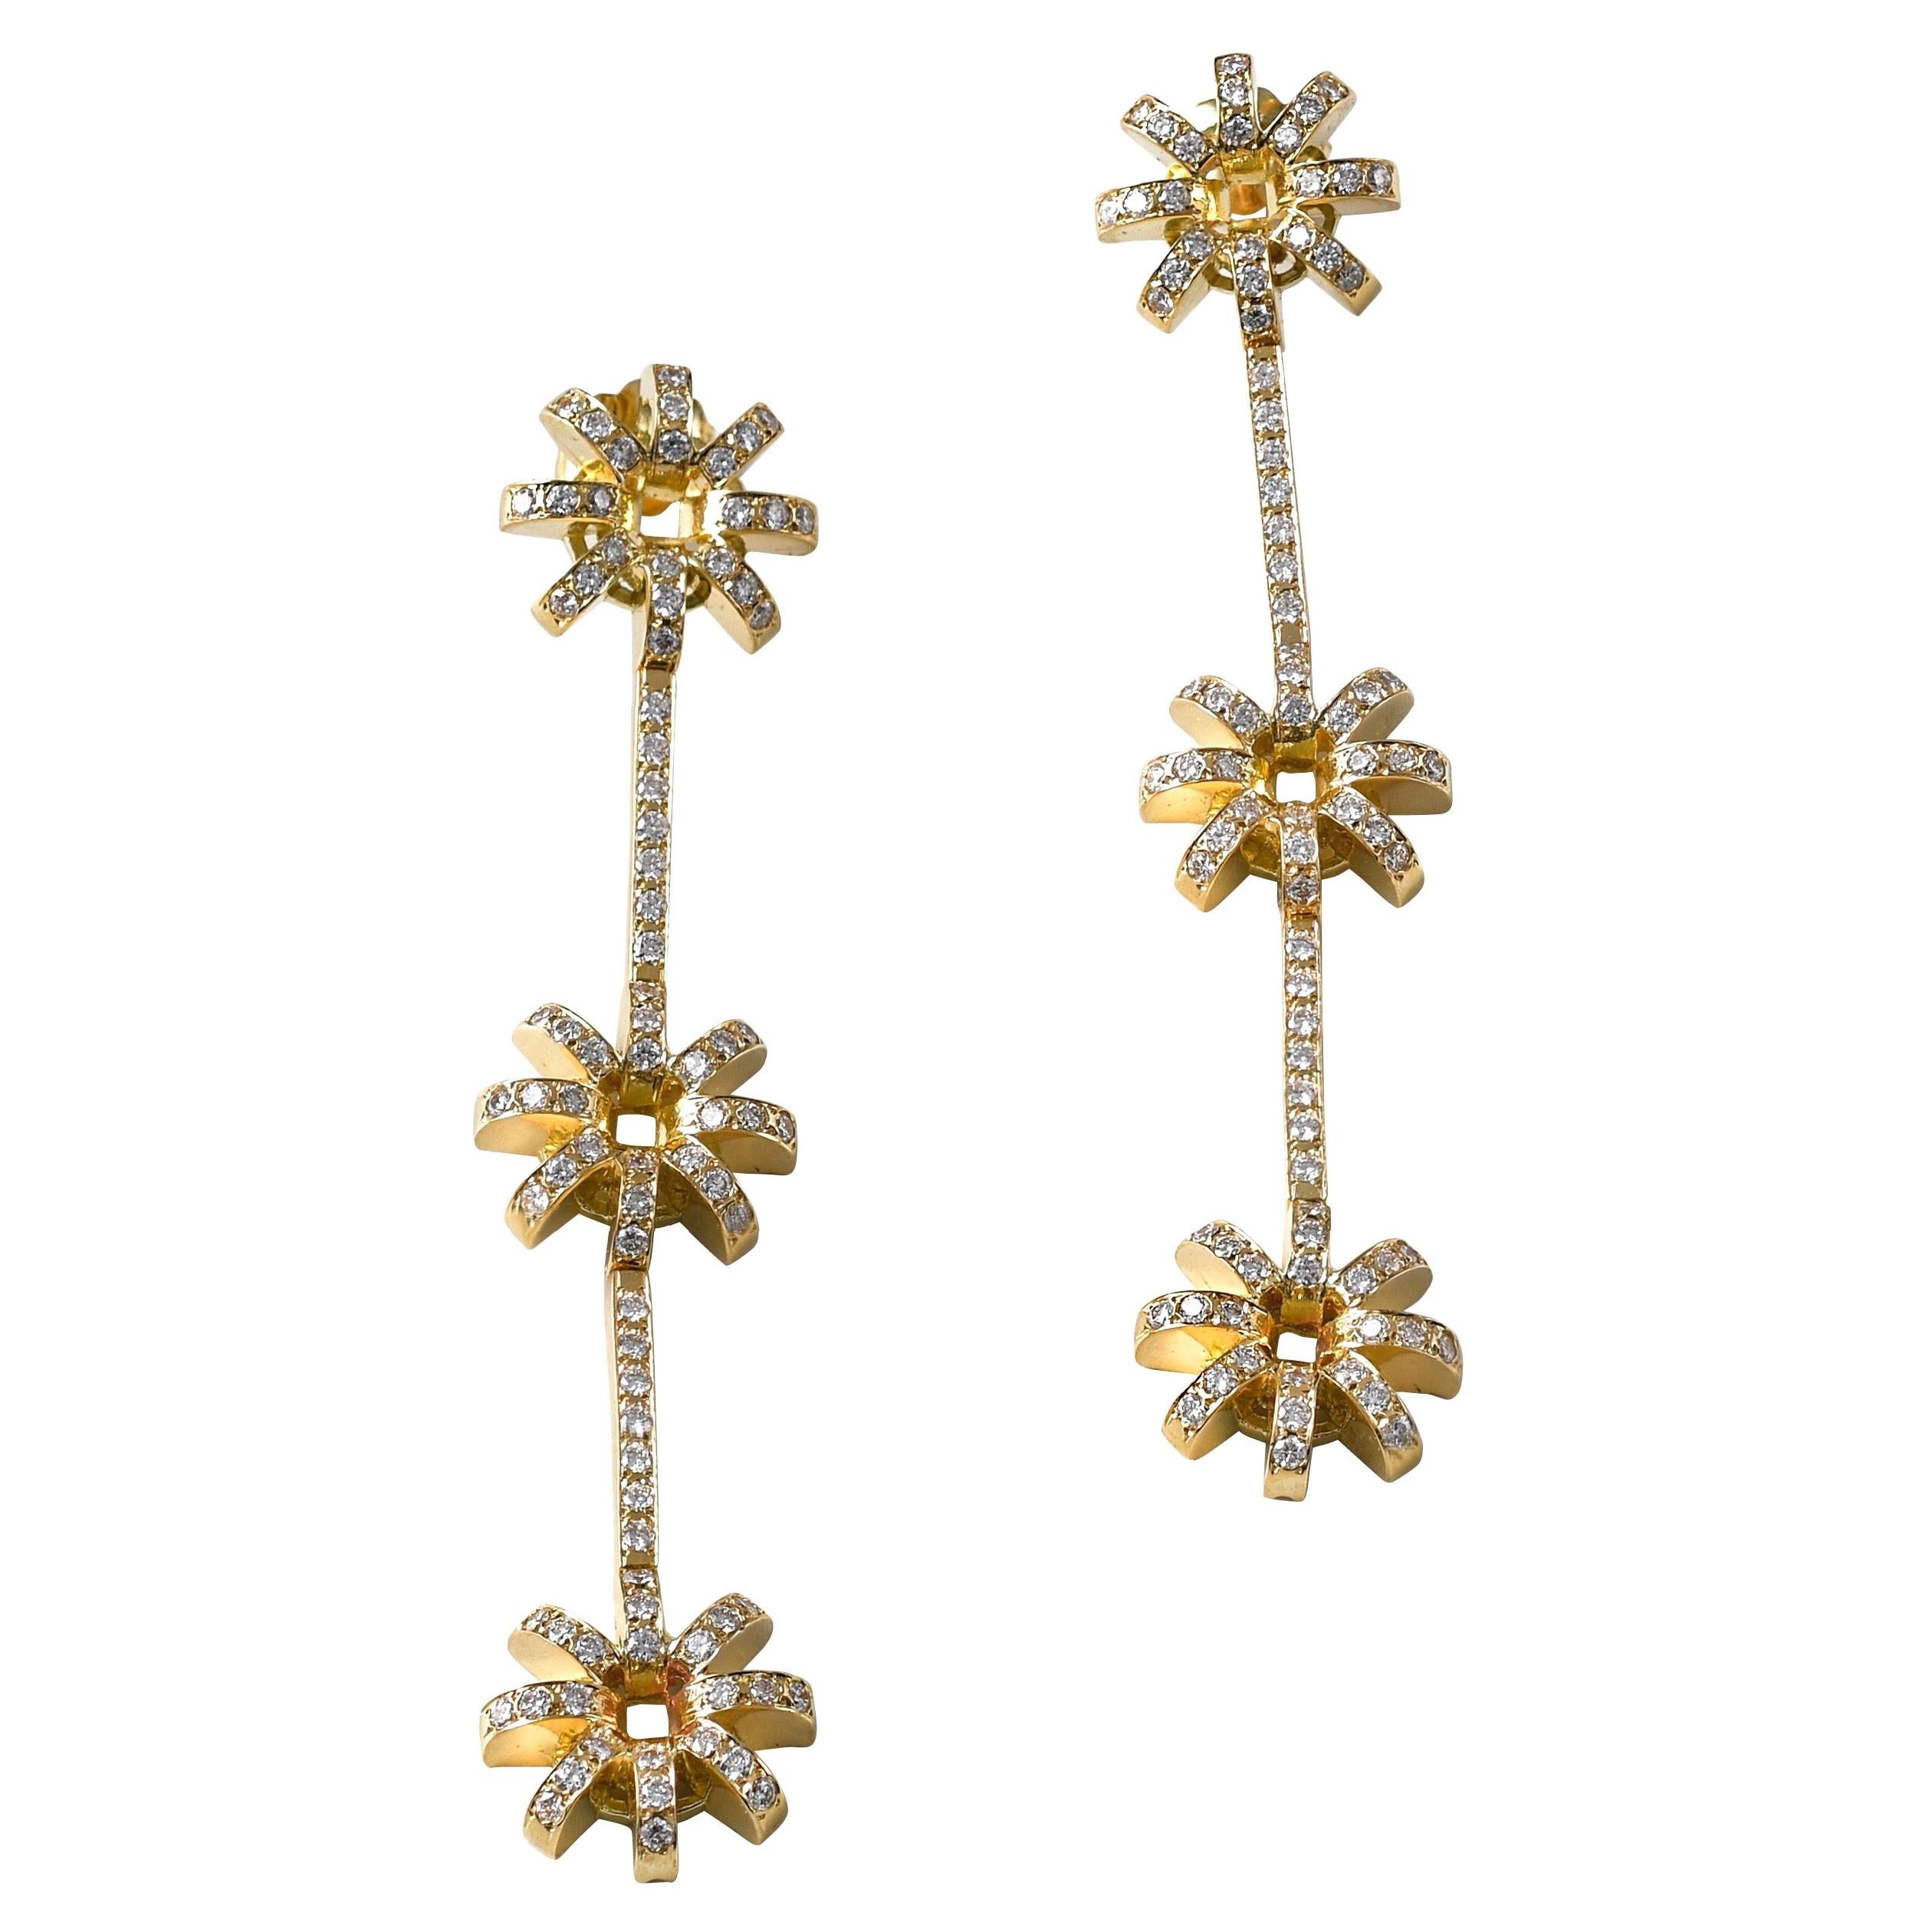 Longues boucles d'oreilles contemporaines en forme de fleur en or jaune 18 carats et diamants blancs